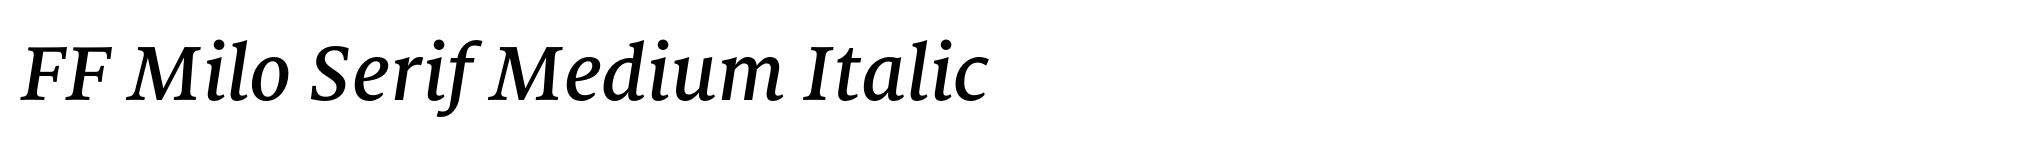 FF Milo Serif Medium Italic image